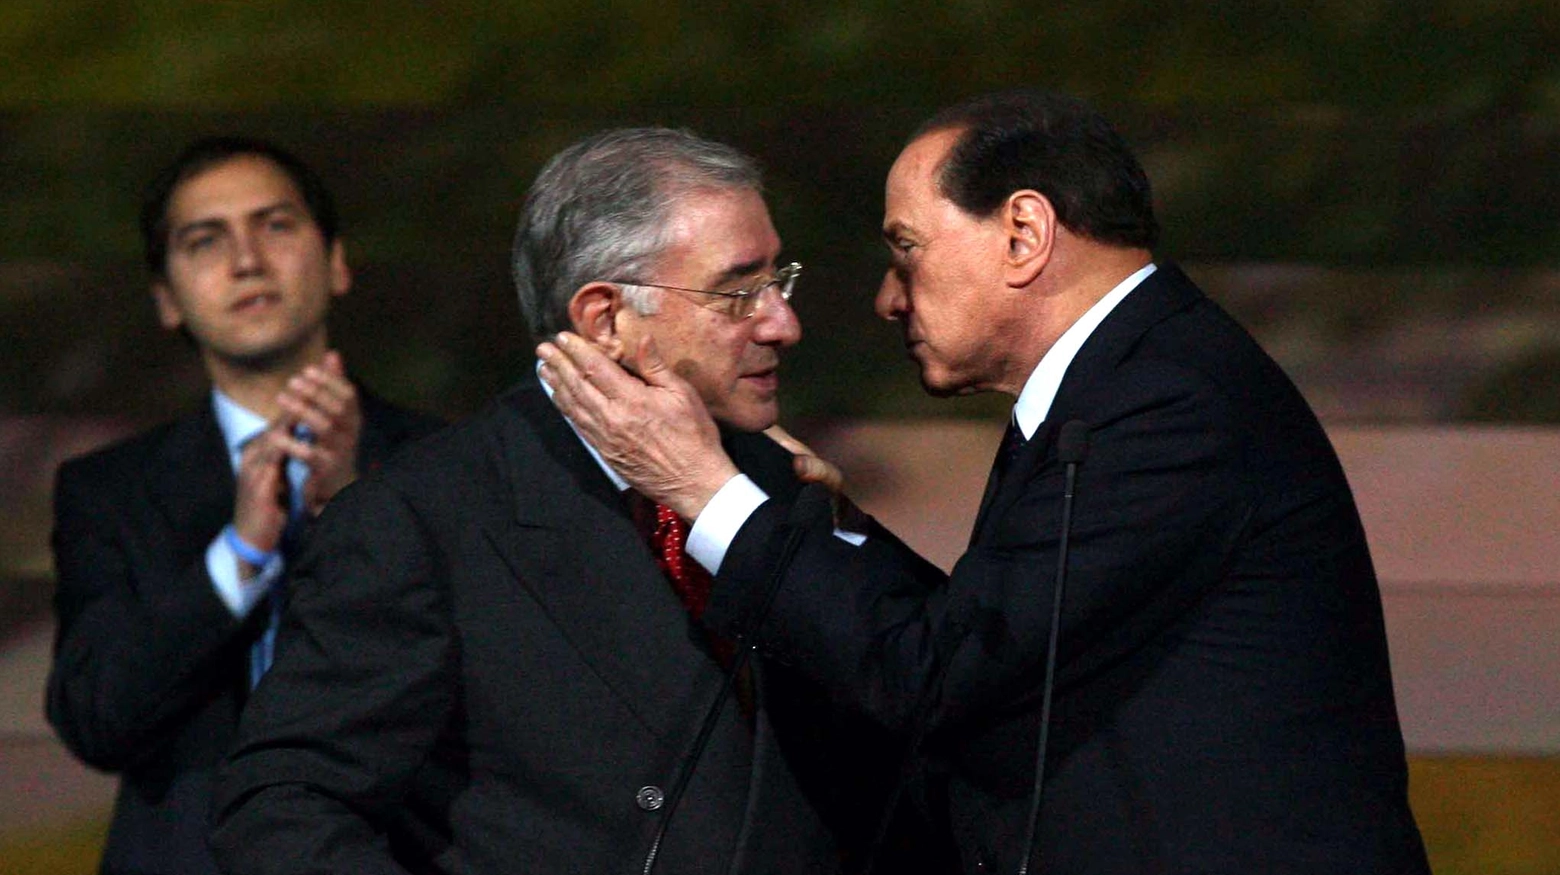 Stragi di mafia, Dell'Utri si avvale della facoltà di non rispondere: tra gli indagati anche Berlusconi